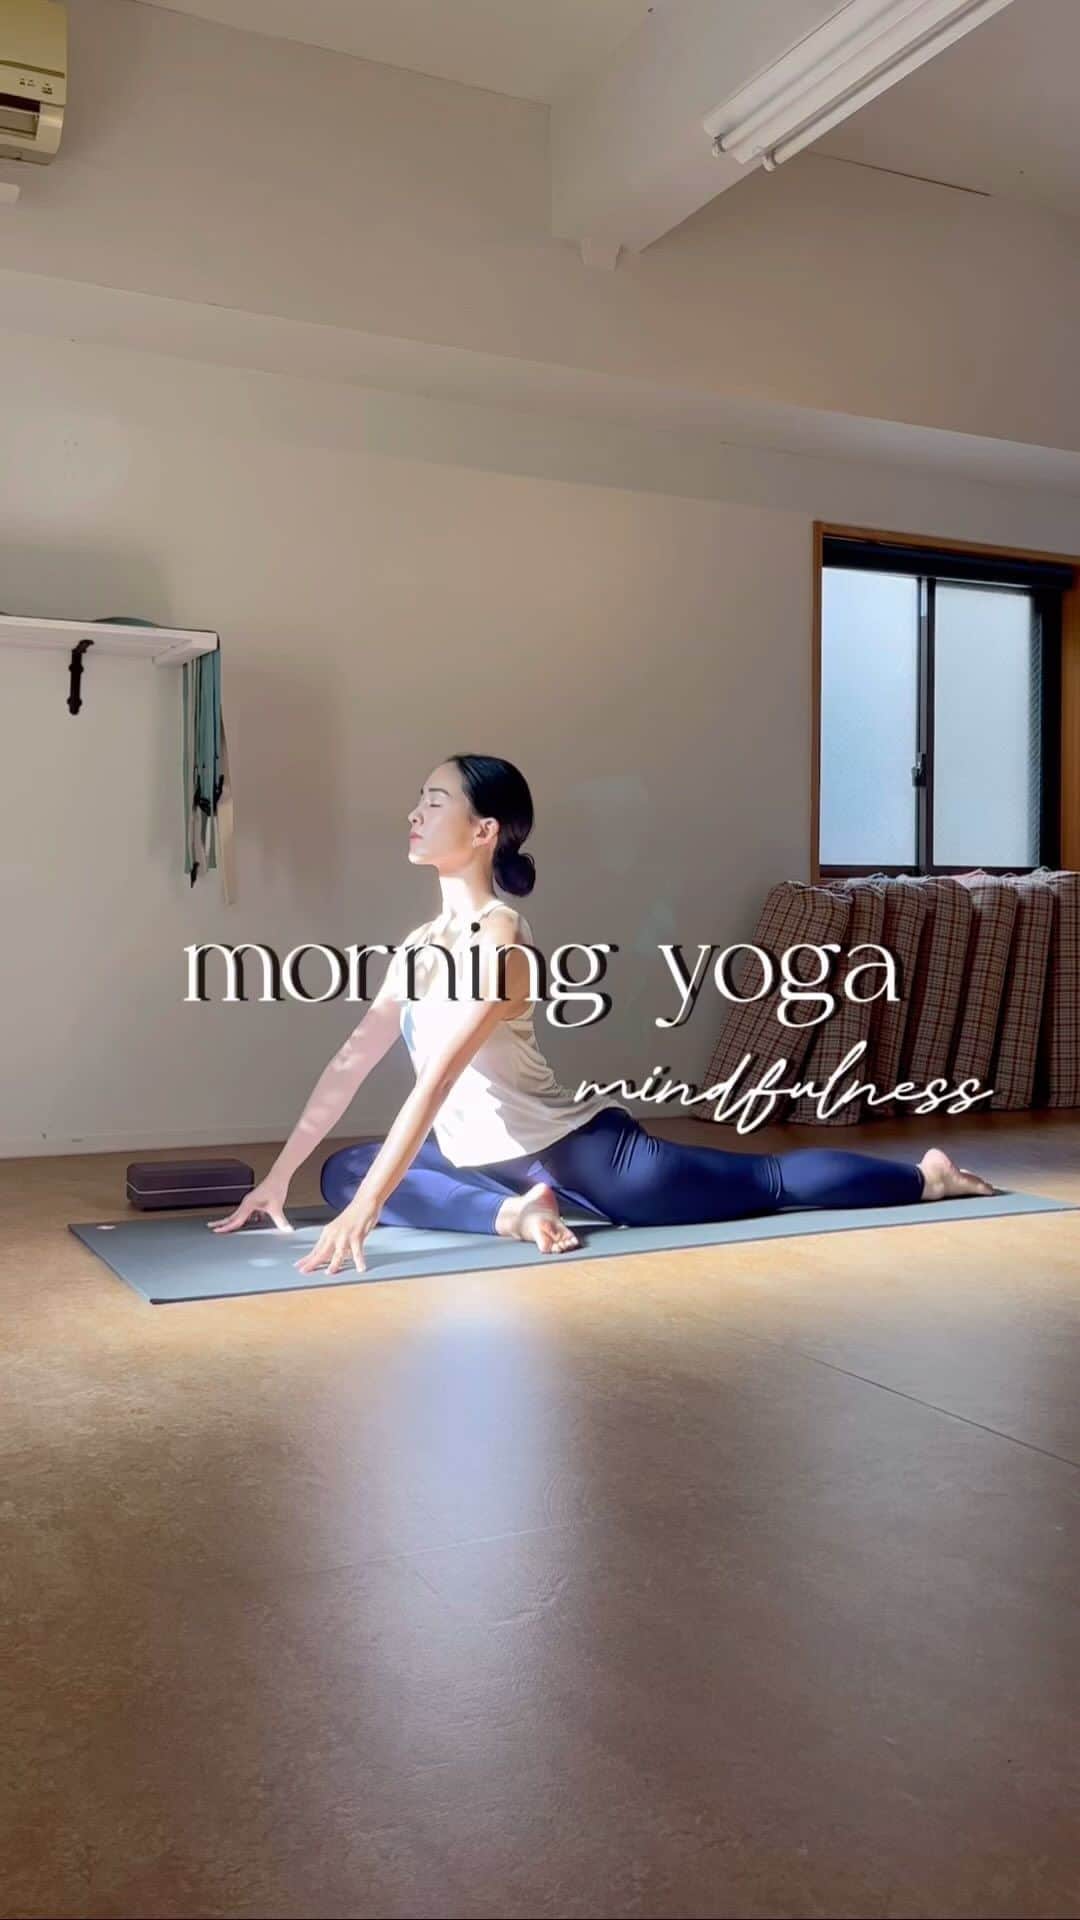 坂野志津佳のインスタグラム：「落ち着いた心で始まる朝。 ⁡ 朝ヨガはとても心地良い🌿 ⁡ ⁡ 今日の自分の調子を観察して、その調子に合わせて無理せず一日を過ごすことができる。 ⁡ ⁡ 朝、自分のヨガの練習をする習慣ができて1年半。 最近は @yogagllow 自由が丘のクラスで生徒さんたちとも朝ヨガの心地良い時間を過ごすことができて嬉しい日々です☺️ ⁡ ⁡ ⁡ ⁡ 今日のあなたはどんな調子？ ⁡ 一日の始まりに、1分でもいいからイマココにある自分を観察して、 今日も快適に過ごしていこーう！😆 ⁡ ⁡ 〜〜〜〜〜〜〜〜〜〜〜〜〜〜〜〜〜 ⁡ ［イベントレッスン］ ⁡ ■10月21日(土) 13:30〜15:00 「マインドフルネスヨガとティータイム」 𖥣ブライトンスタジオ代官山 @brighton_studio_daikanyama  残席→🈵キャンセル待ち ⁡ ⁡ ［レギュラークラス］ ⁡ □毎週月曜日 12:00〜13:15 「リラックスフローヨガ」(マタニティー可) 𖥣ヨガスタジオgllow 二子玉川 ⁡ □毎週火曜日 8:15〜9:15 「朝ヨガ」 𖥣ヨガスタジオgllow自由が丘 ⁡ □毎週木曜日 12:00〜13:15 「リフレッシュヨガ」(マタニティー可) 𖥣ヨガスタジオgllow二子玉川 ⁡ @yogagllow  ⁡ ※詳細・予約はトップページにリンクしています。 ⁡ 〜〜〜〜〜〜〜〜〜〜〜〜〜〜〜〜〜  #ヨガ #朝ヨガ #モーニングヨガ #瞑想 #マインドフルネス #ヨガレッスン #ヨガインストラクター #ヨガスタジオ #自由が丘 #朝活  #yoga #yogini #yogalife #morningyoga  ⁡ ⁡ ⁡ ⁡ ⁡ ⁡ ⁡ ⁡」